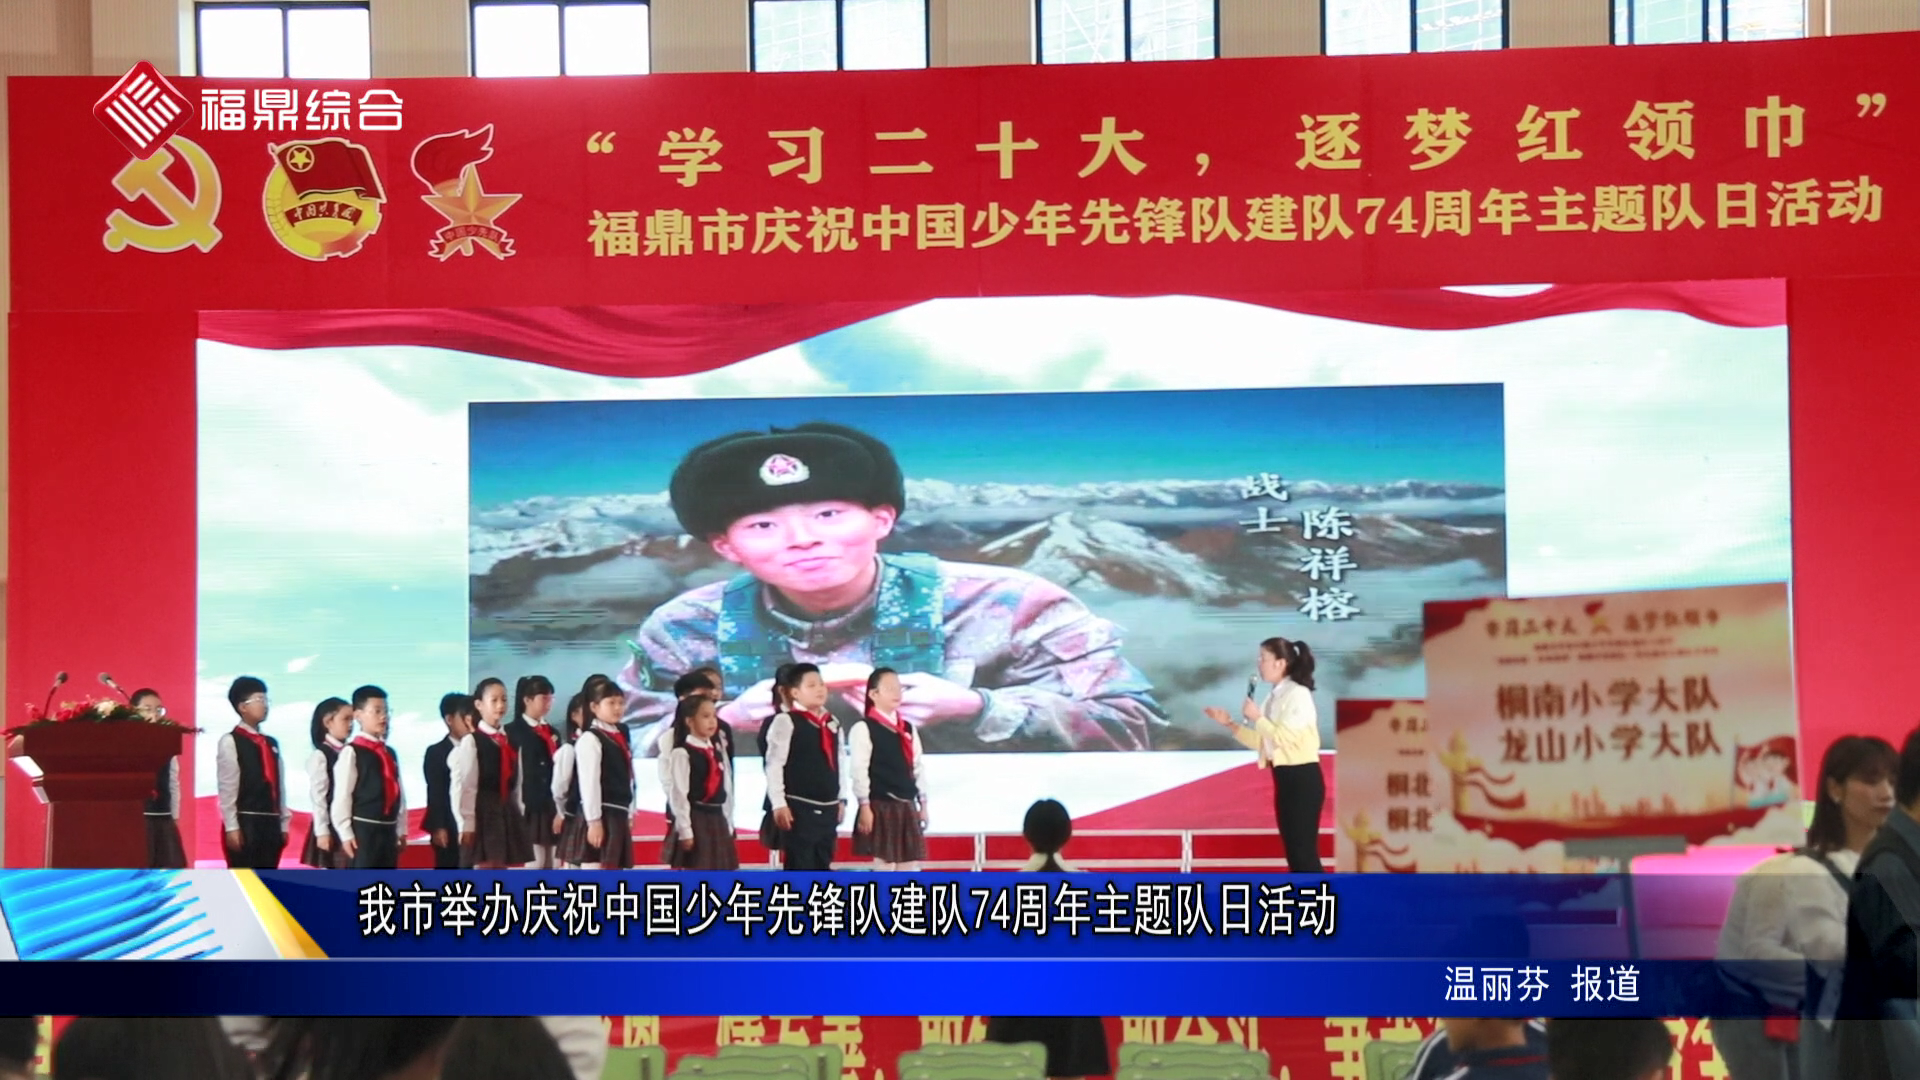 我市舉辦慶祝中國少年先鋒隊建隊74周年主題隊日活動